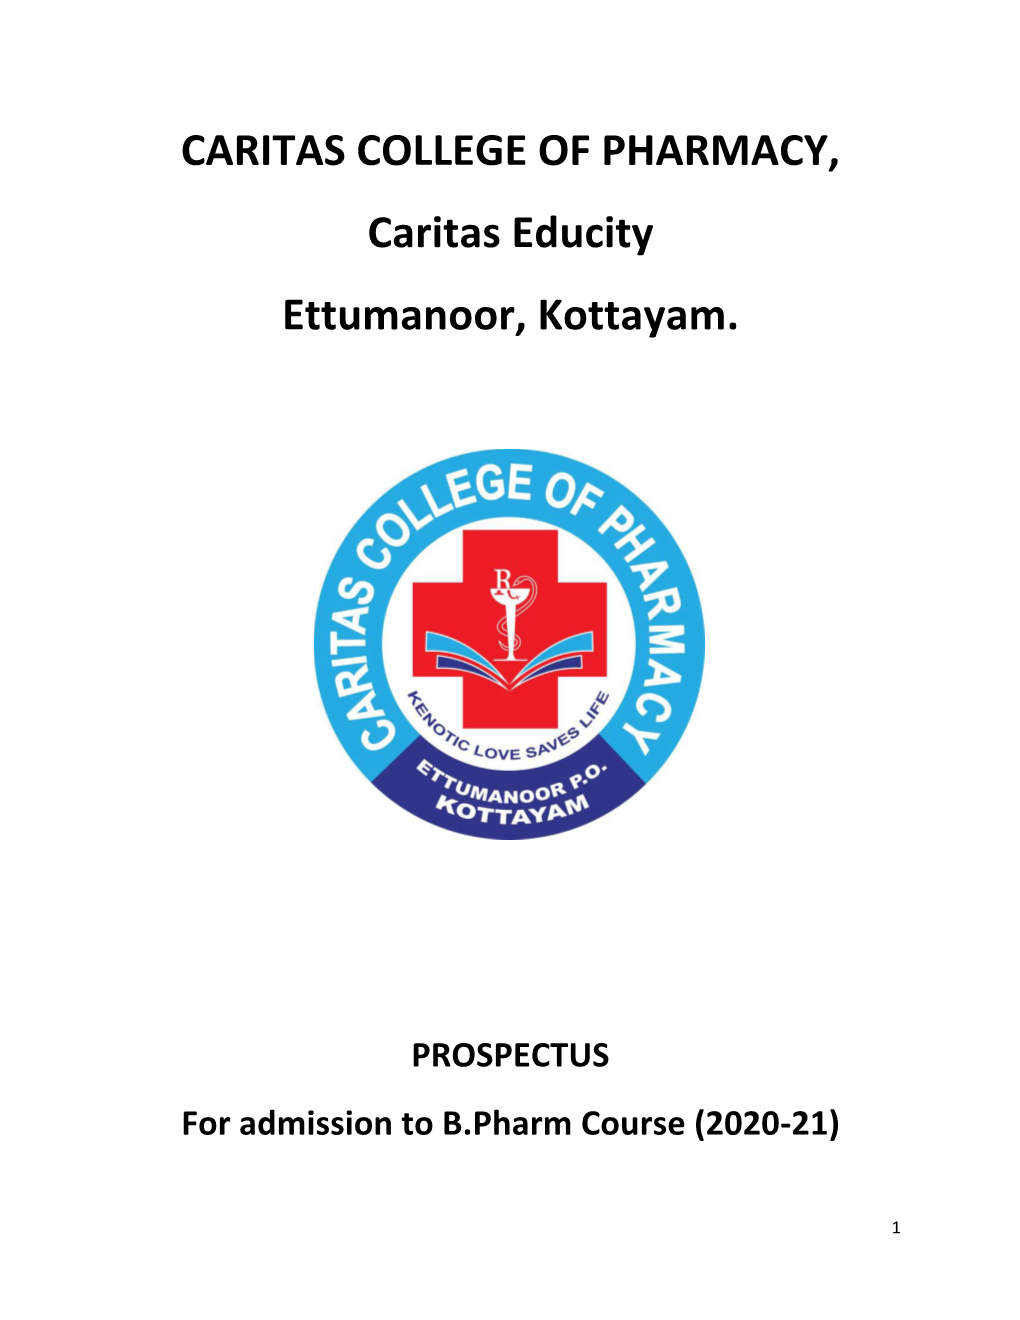 CARITAS COLLEGE of PHARMACY, Caritas Educity Ettumanoor, Kottayam